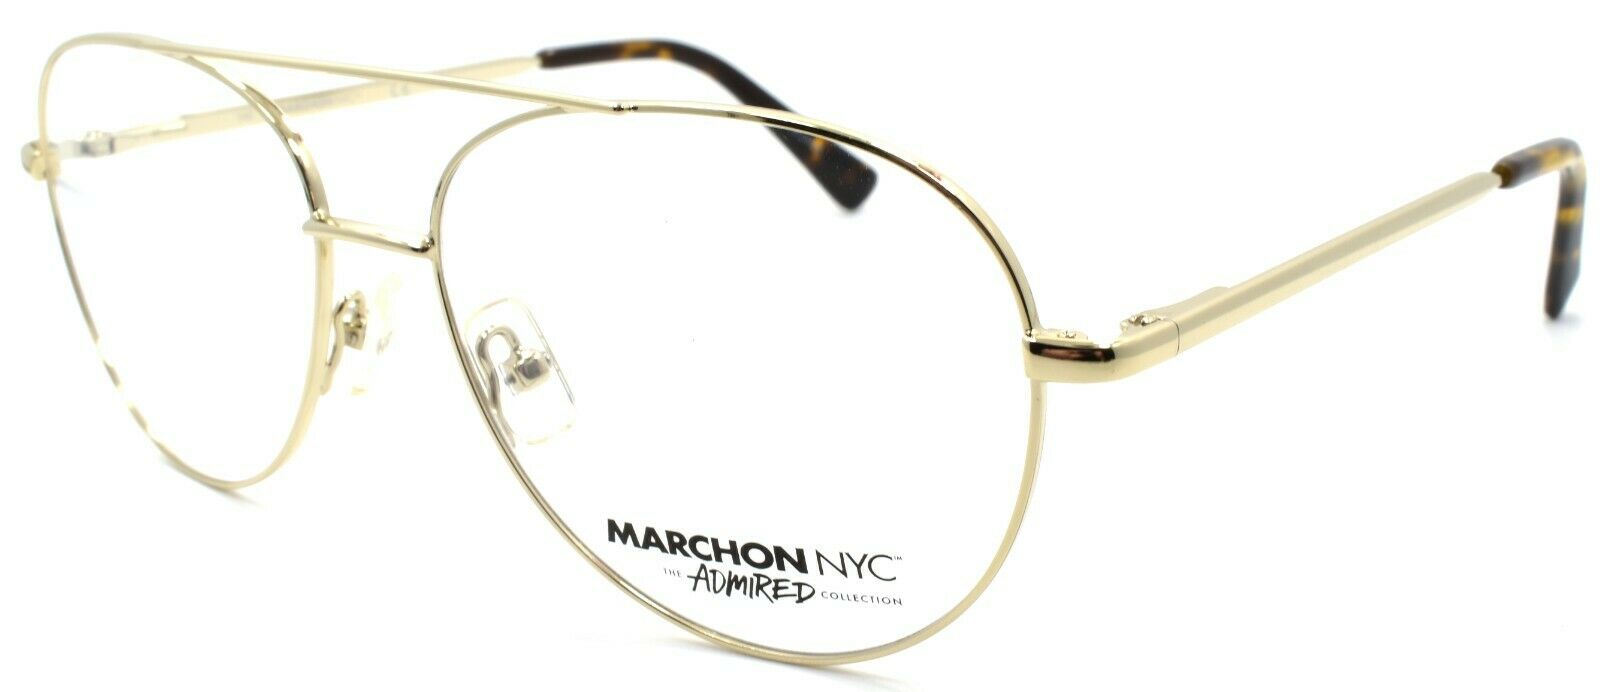 1-Marchon M8000 710 Eyeglasses Frames Aviator 53-15-140 Light Gold-886895404792-IKSpecs